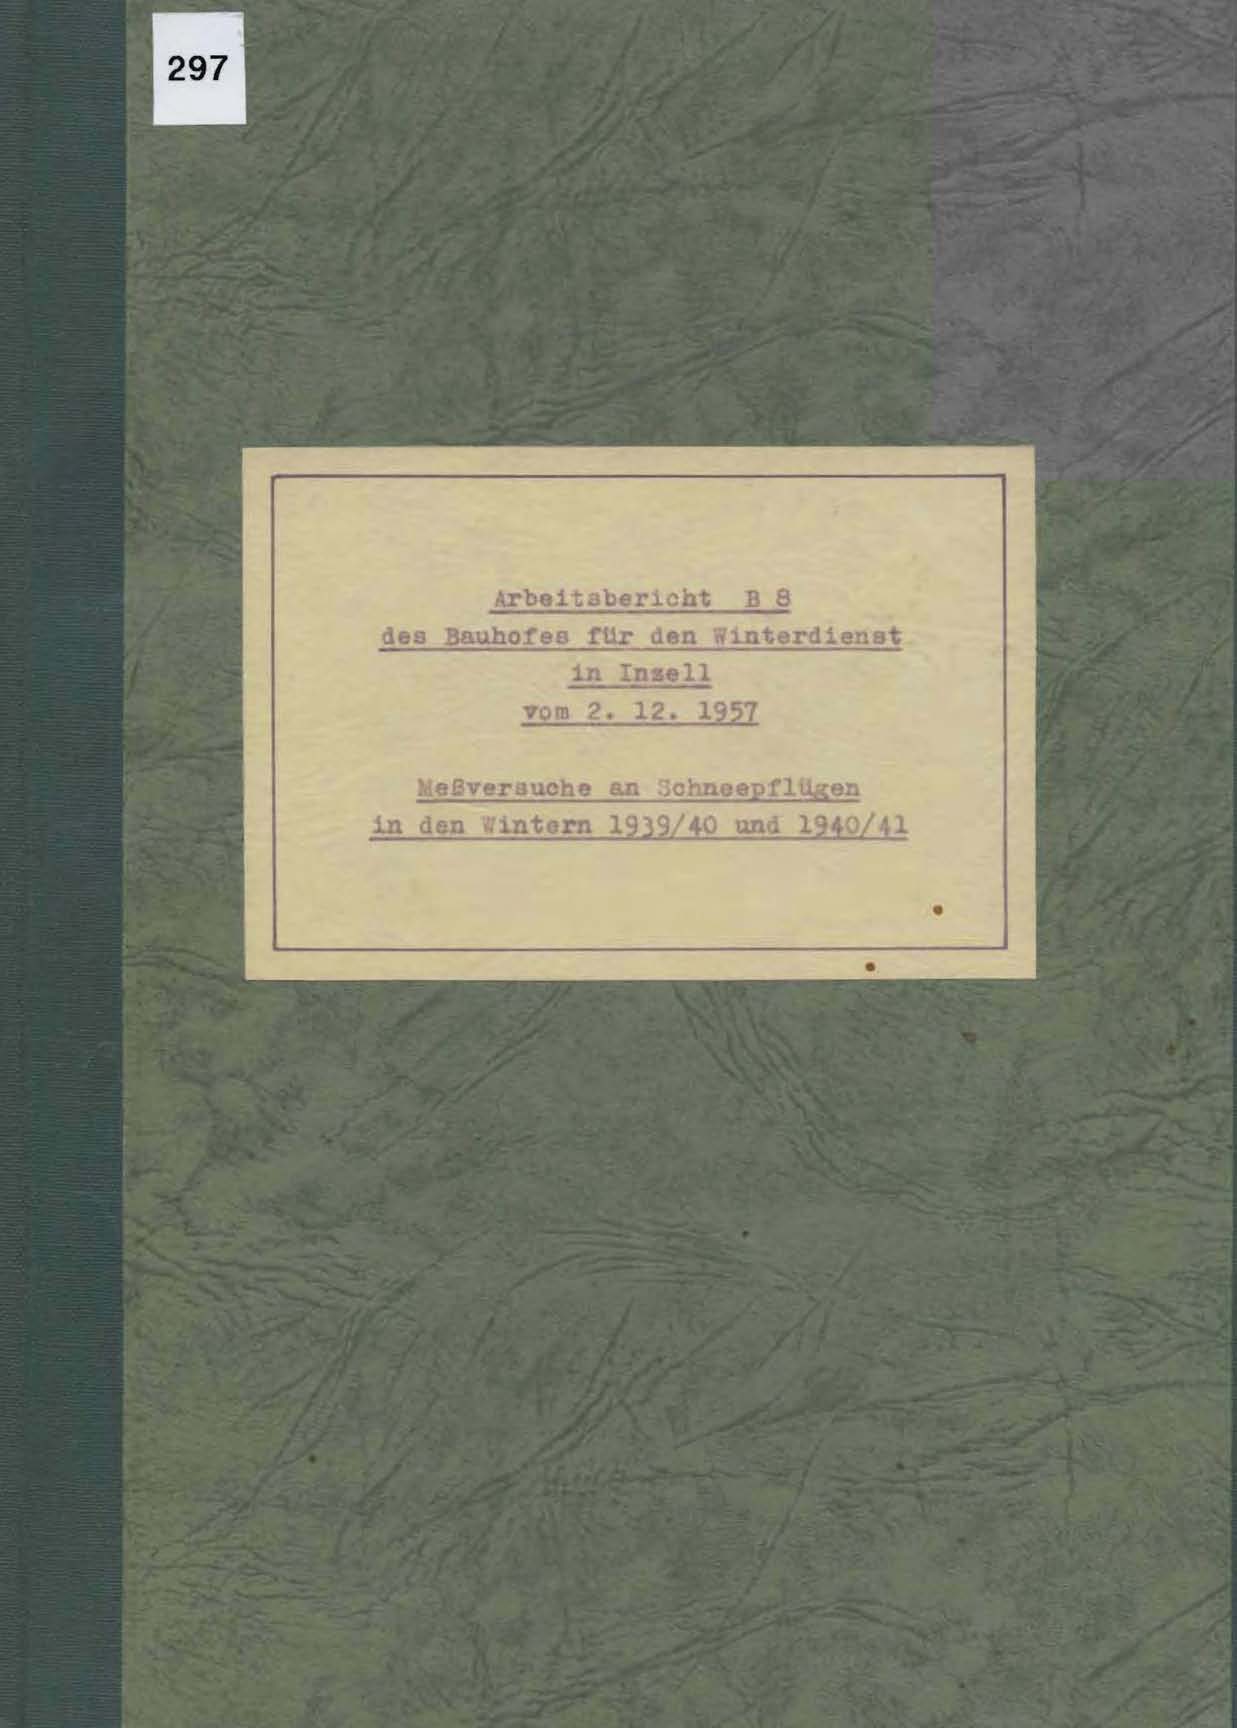 Arbeitsbericht B8 des Bauhofes für den Winterdienst in Inzell vom 2.12.1957